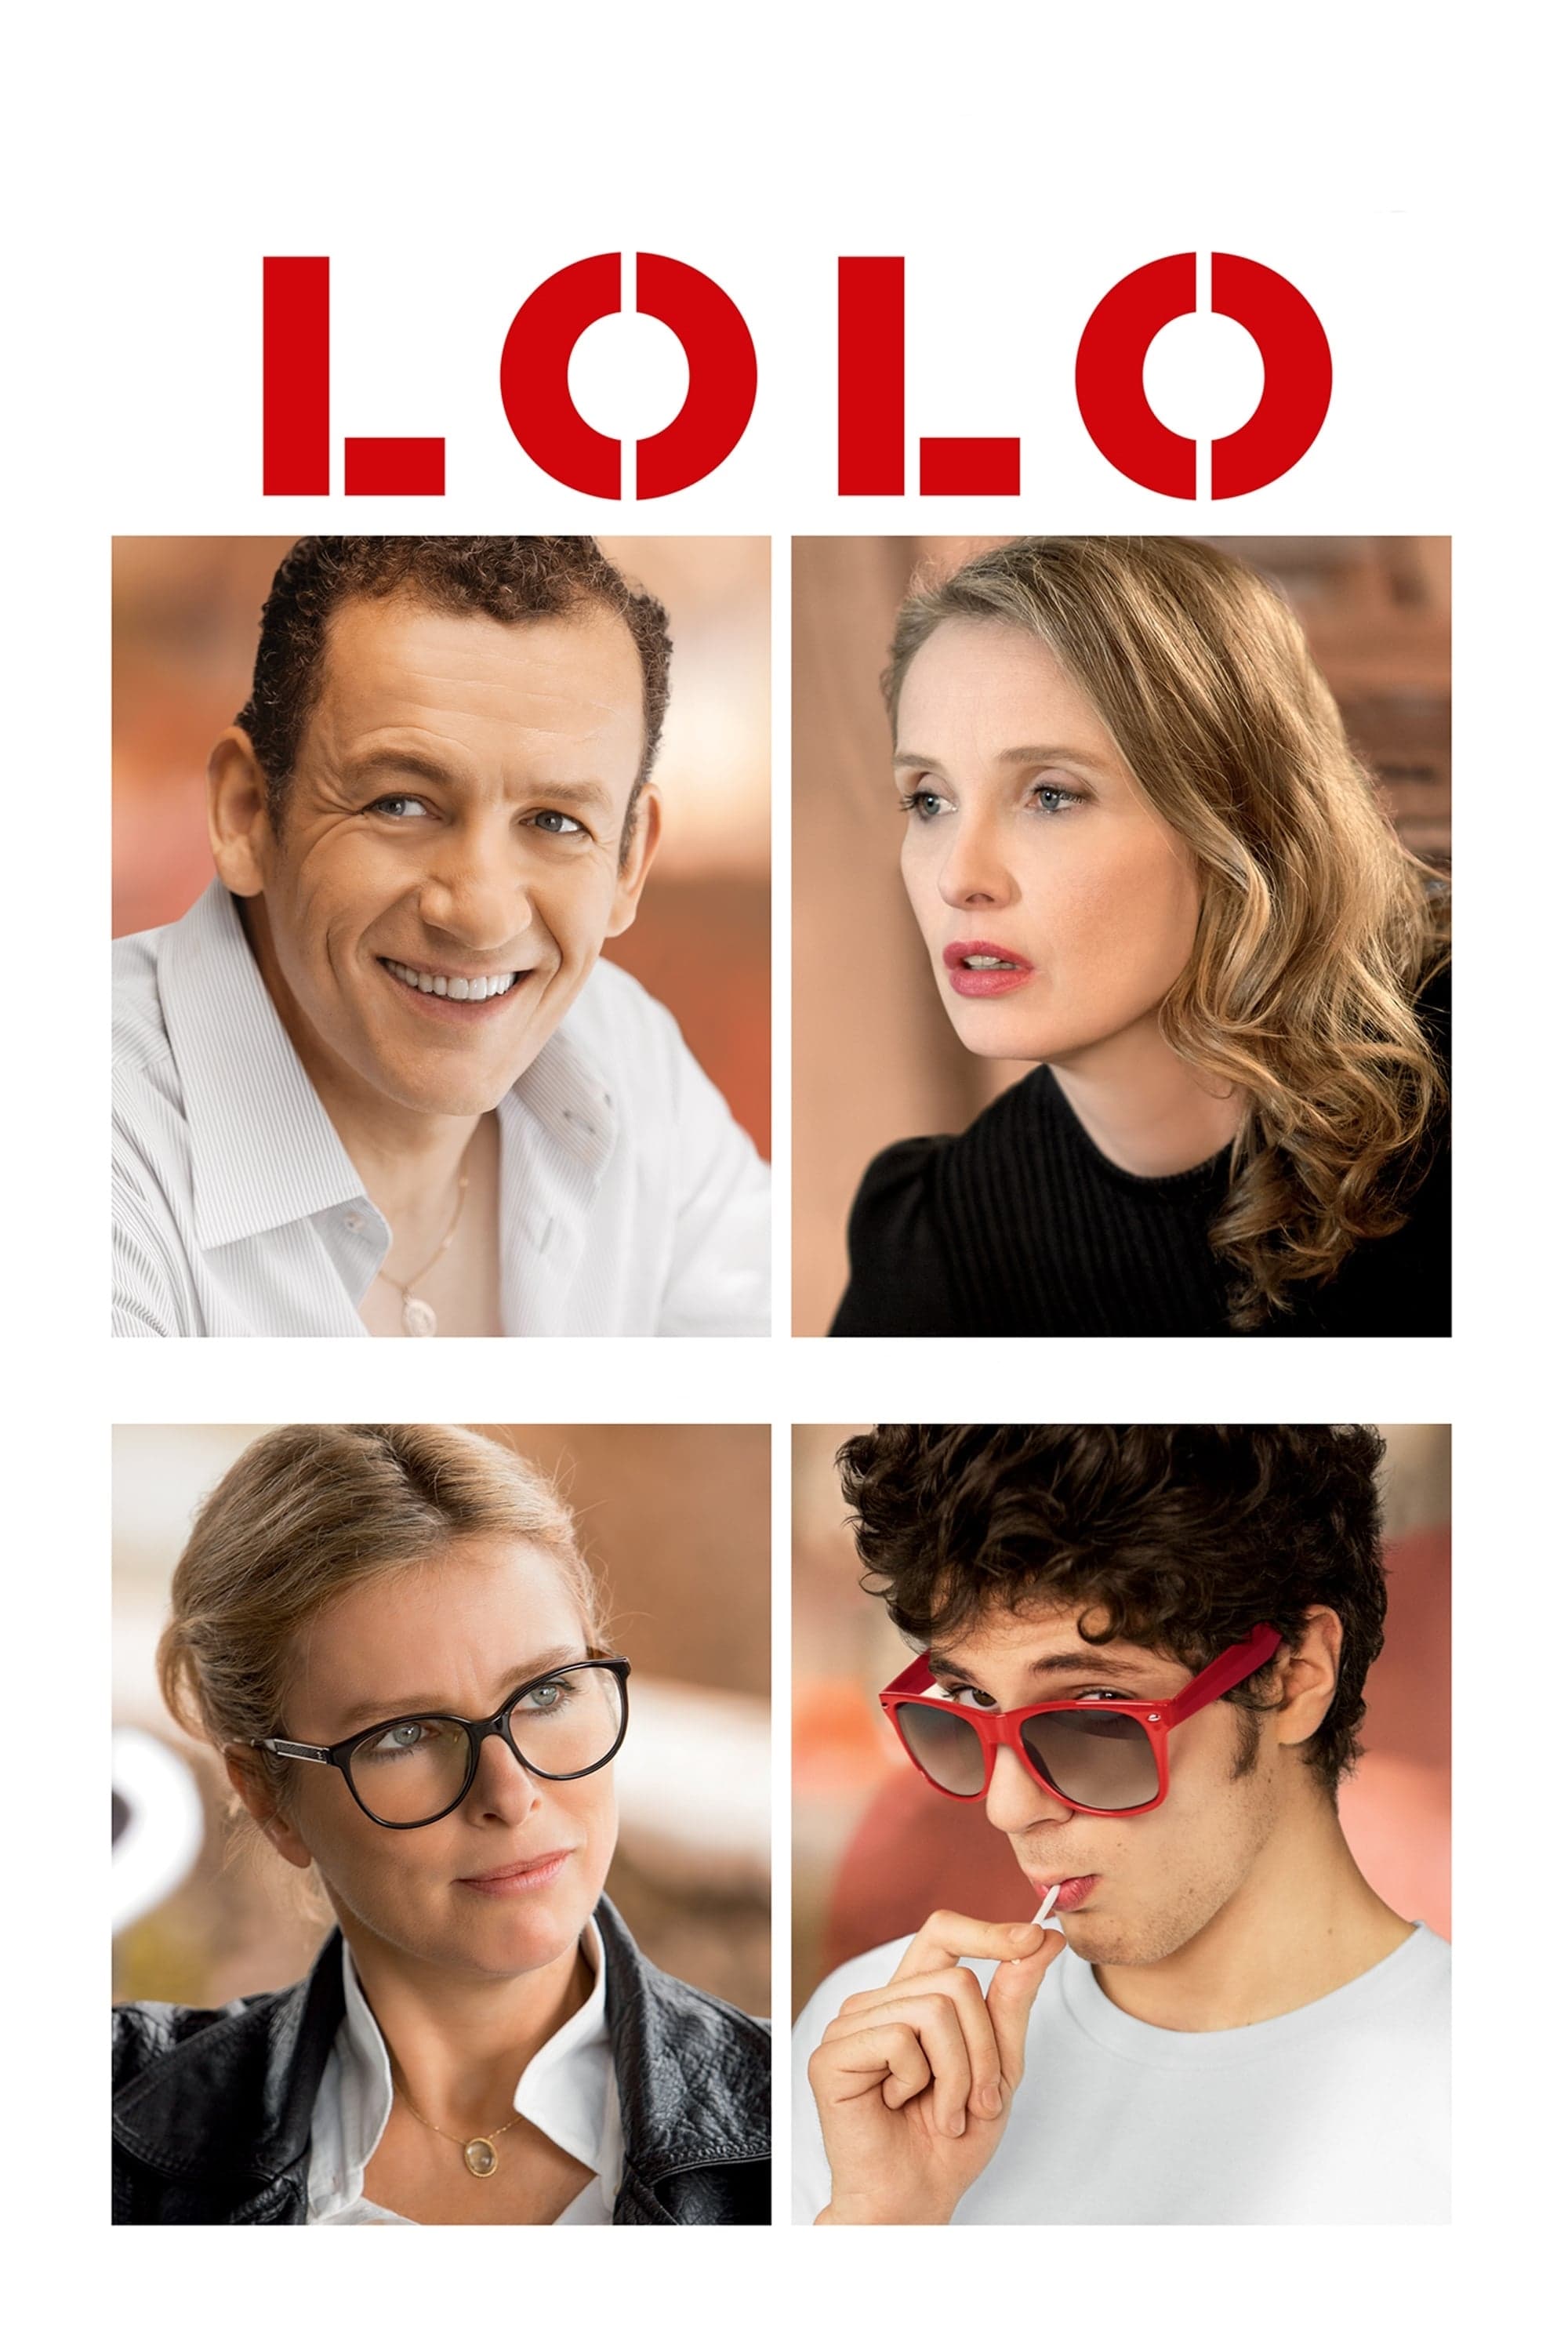 Lolo (2015)